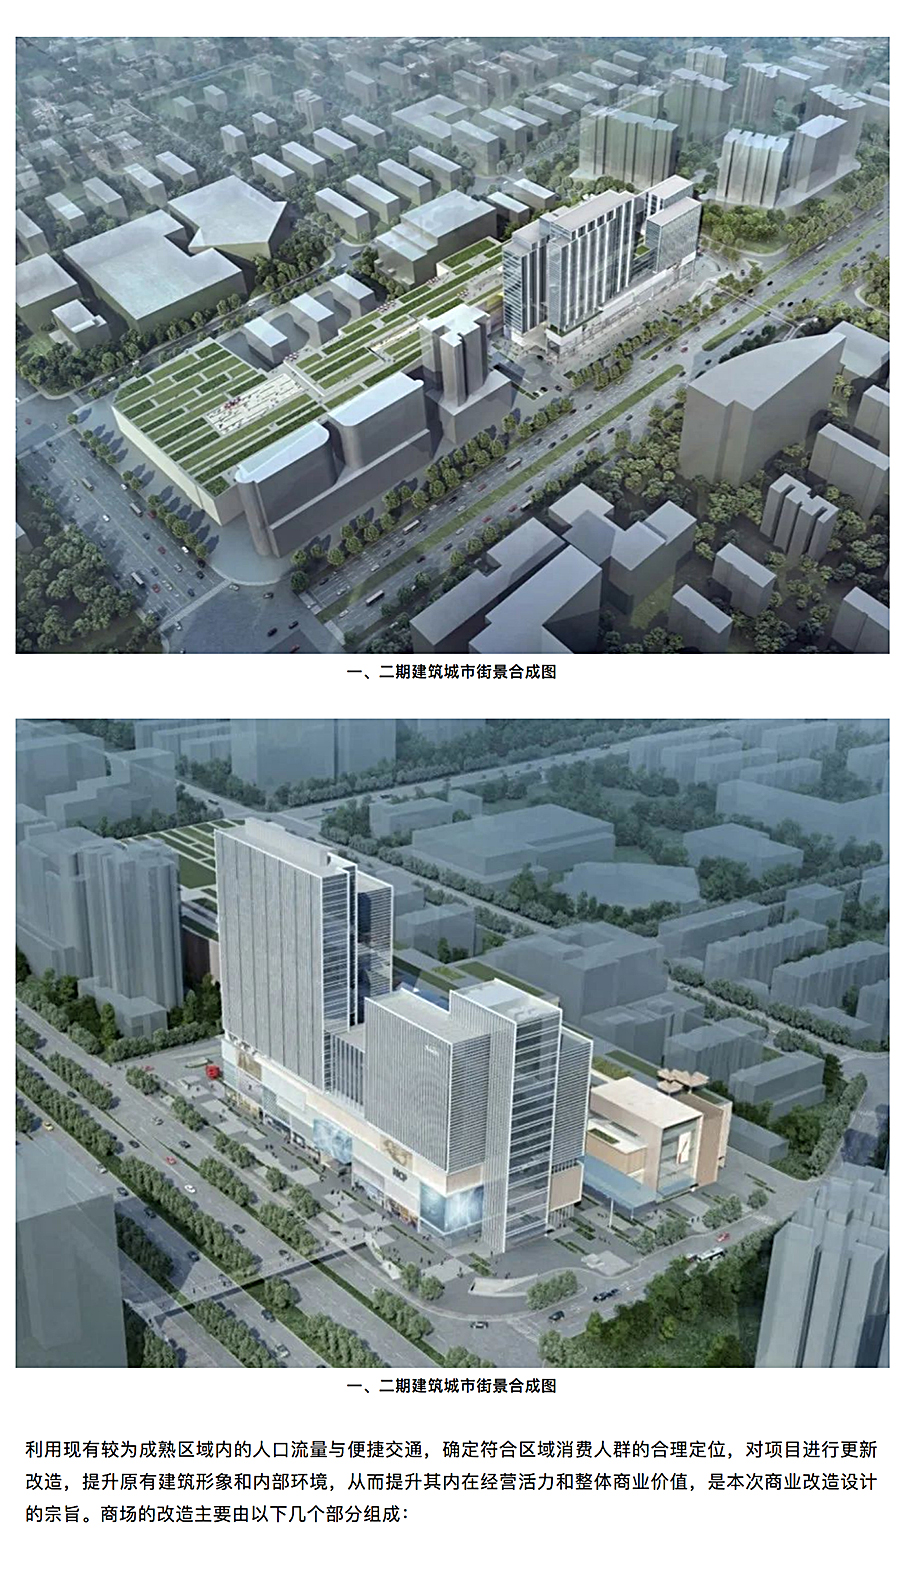 与时俱进的升级改造-_-南京龙江新城市广场一期商业改造_0003_图层-4.jpg